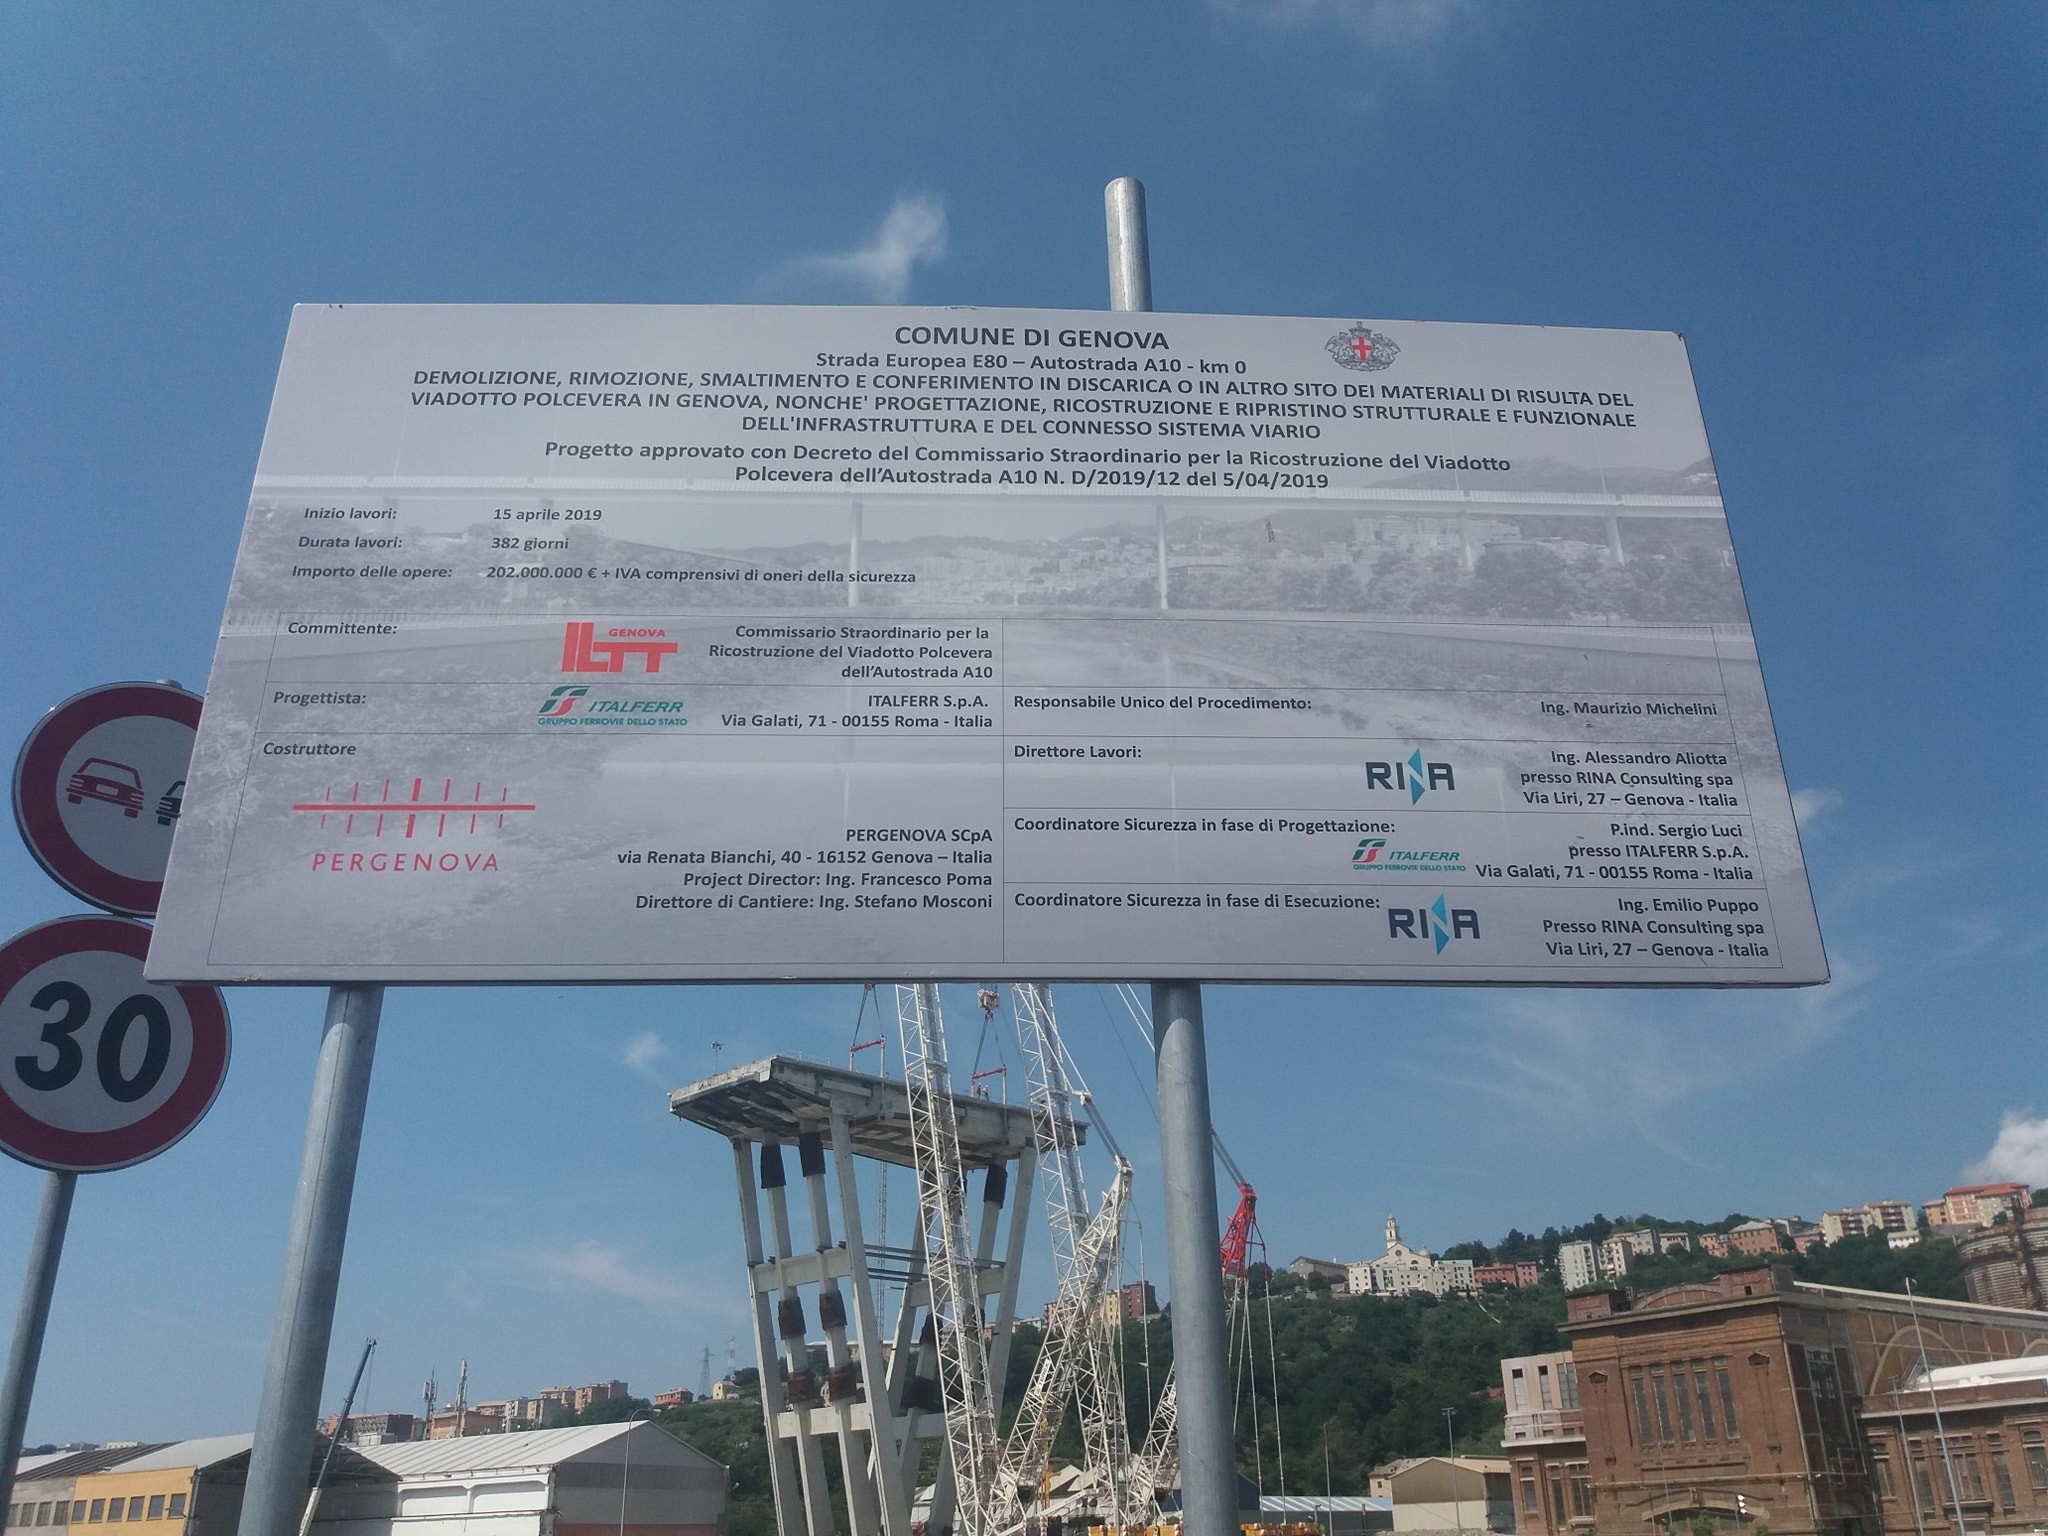 Baustellenschild bei der neuen Morandi-Brücke